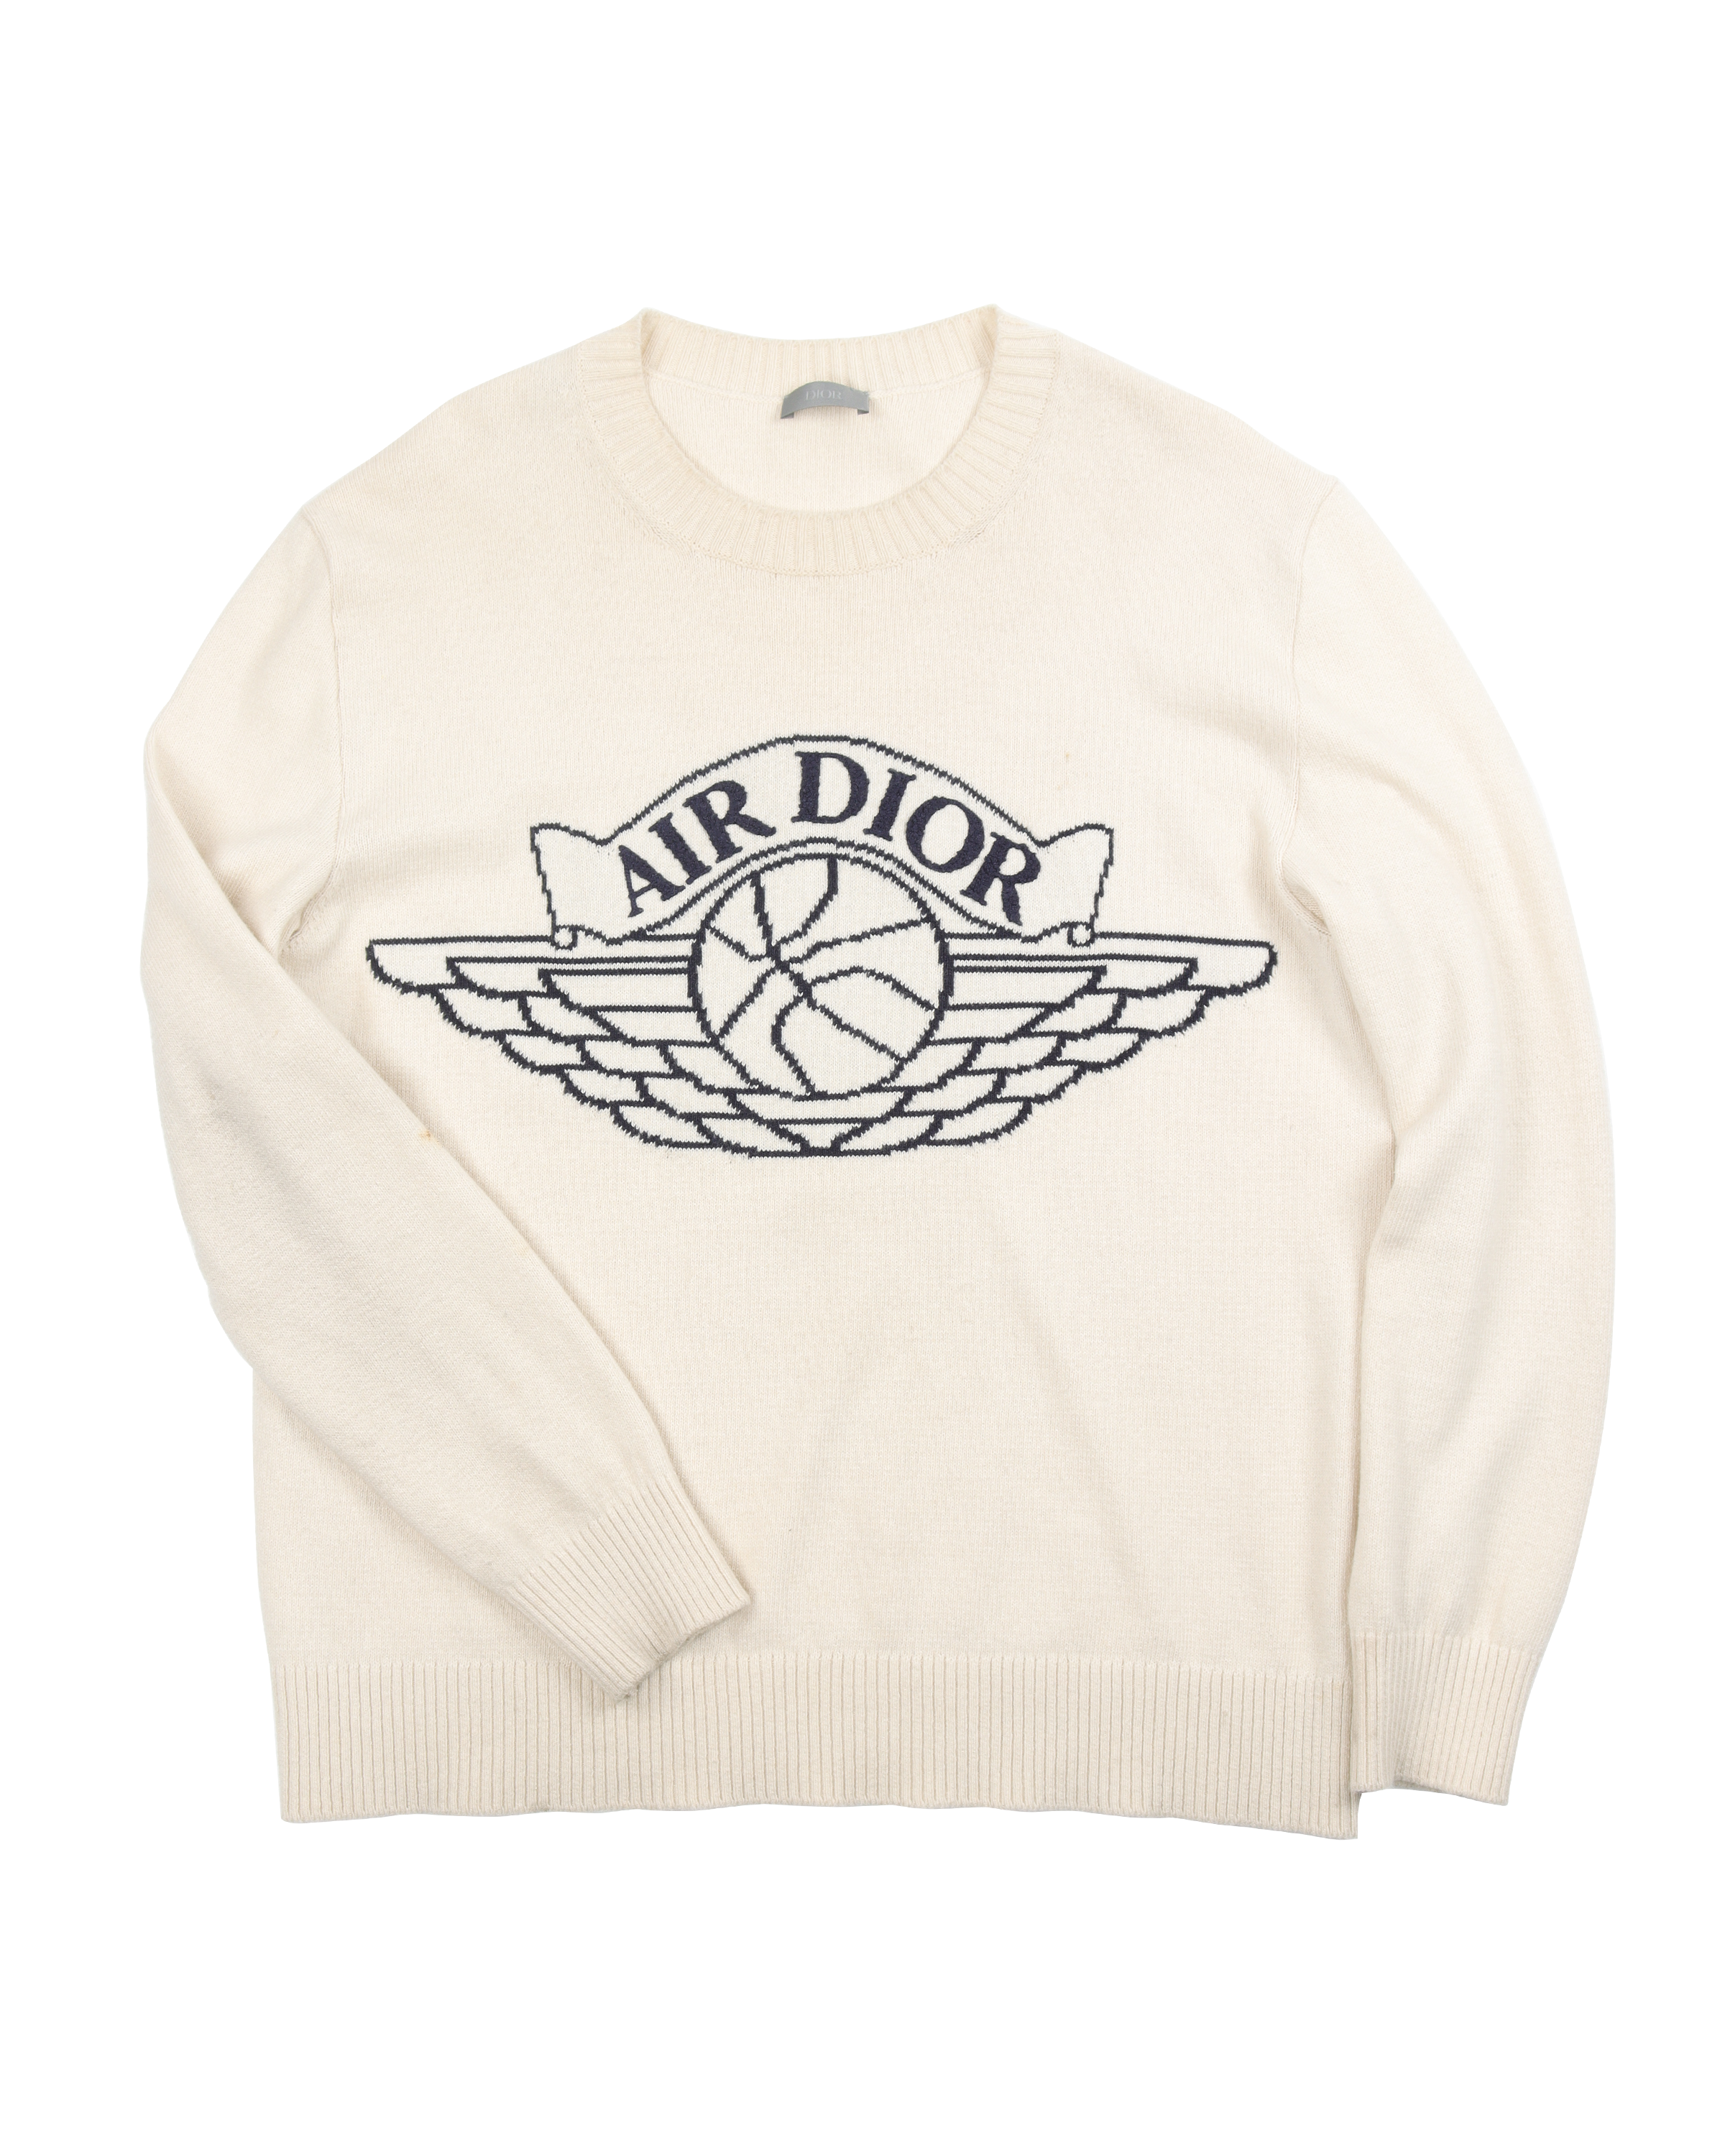 Jordan "Air Dior" Sweater